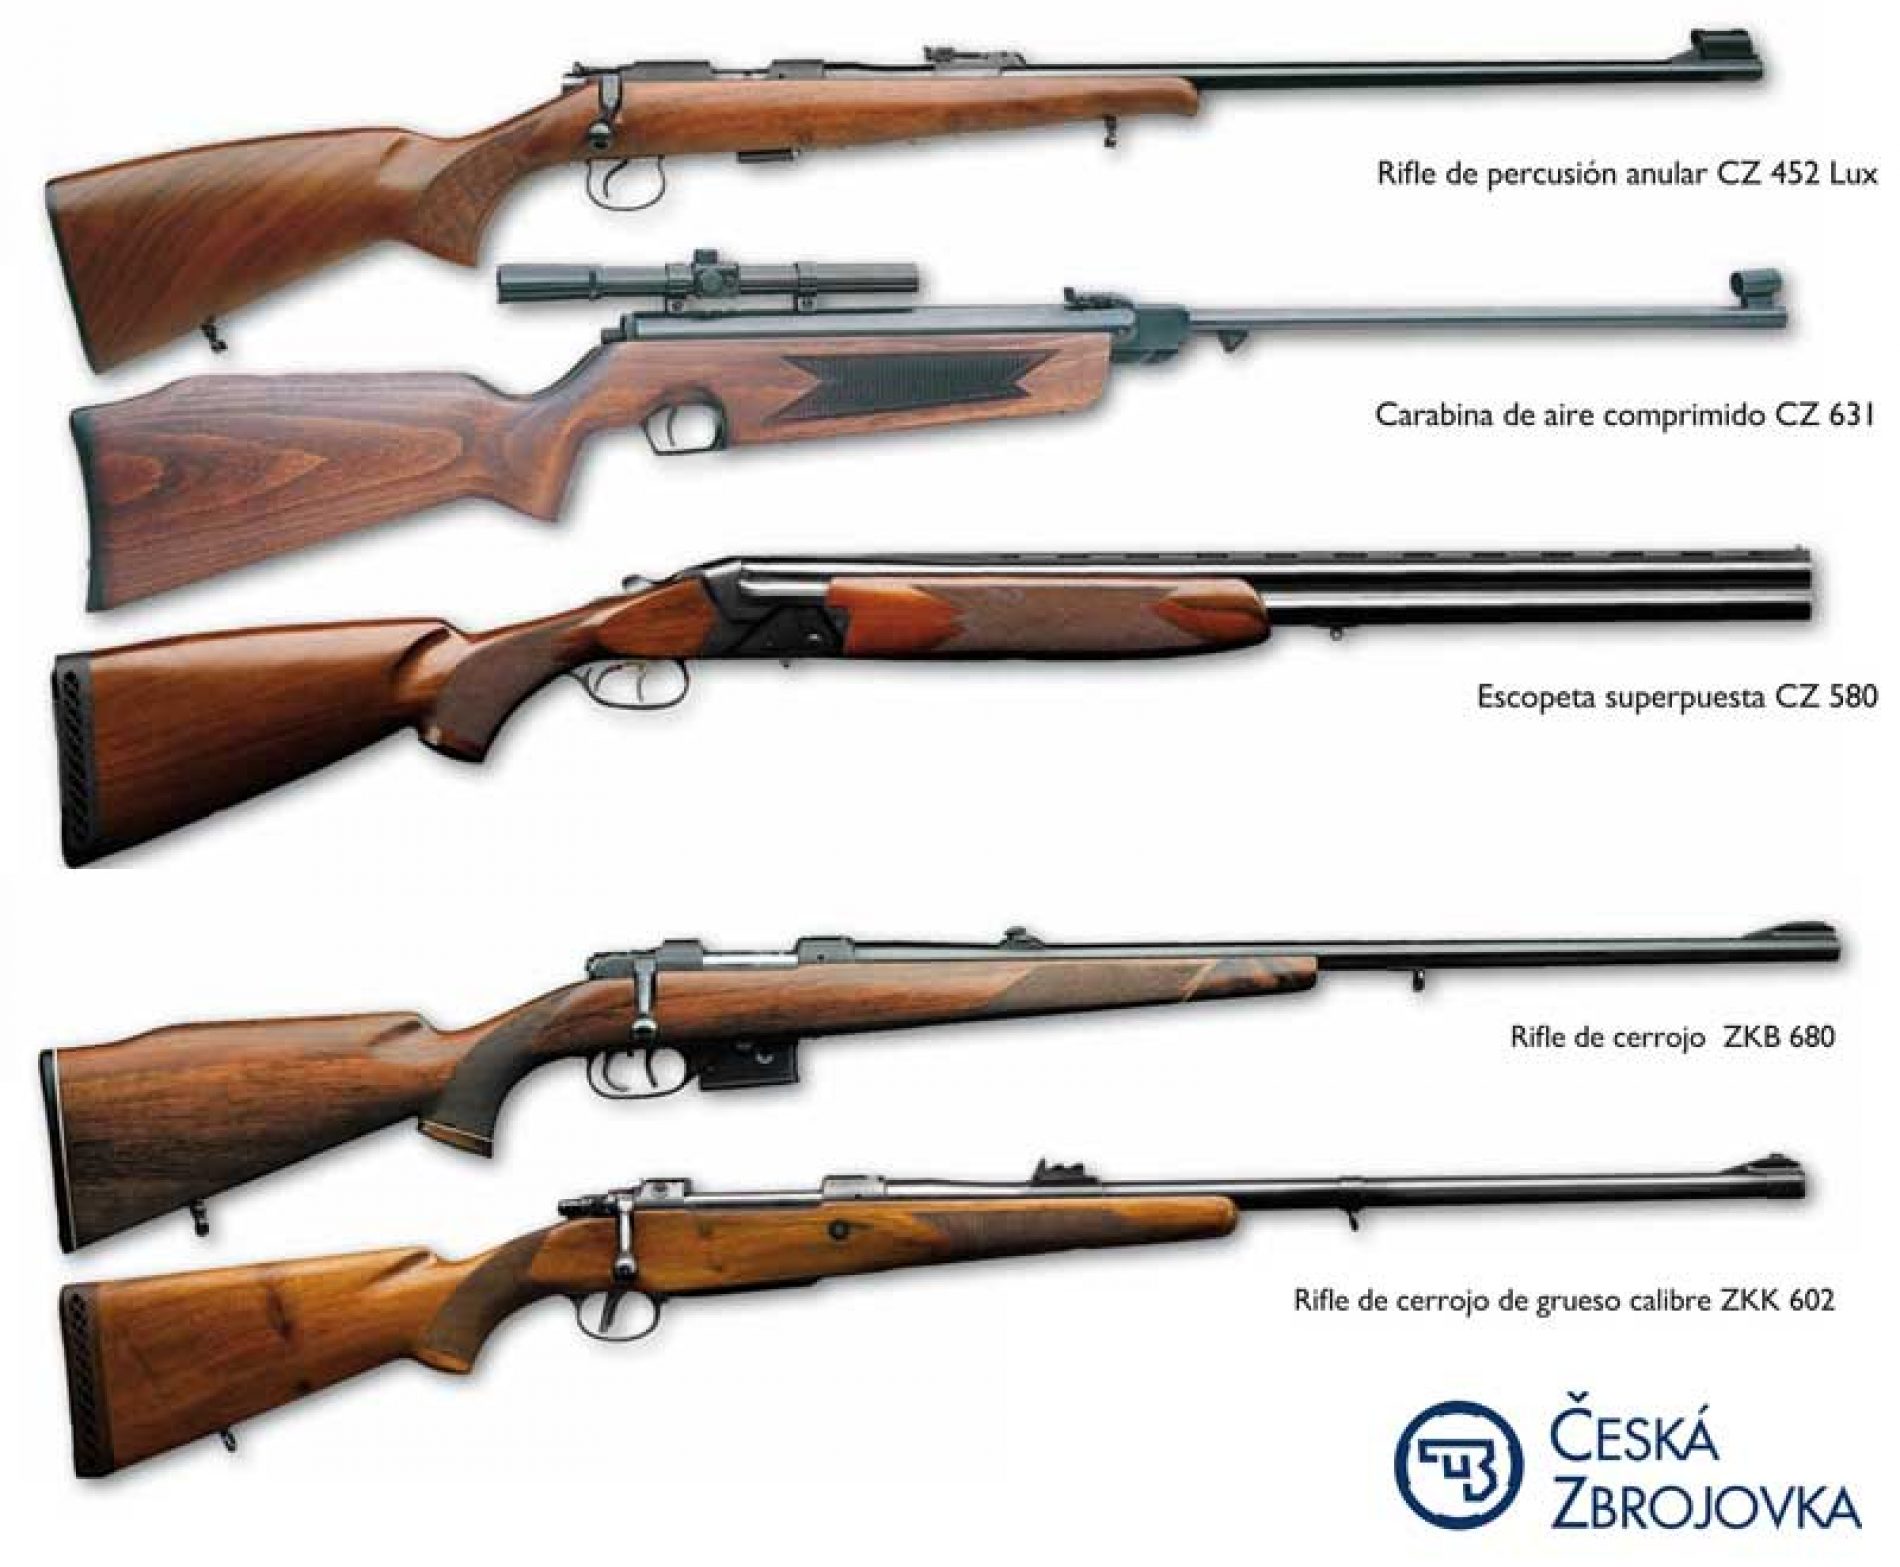 Los rifles más populares de Ceská zbrojovka